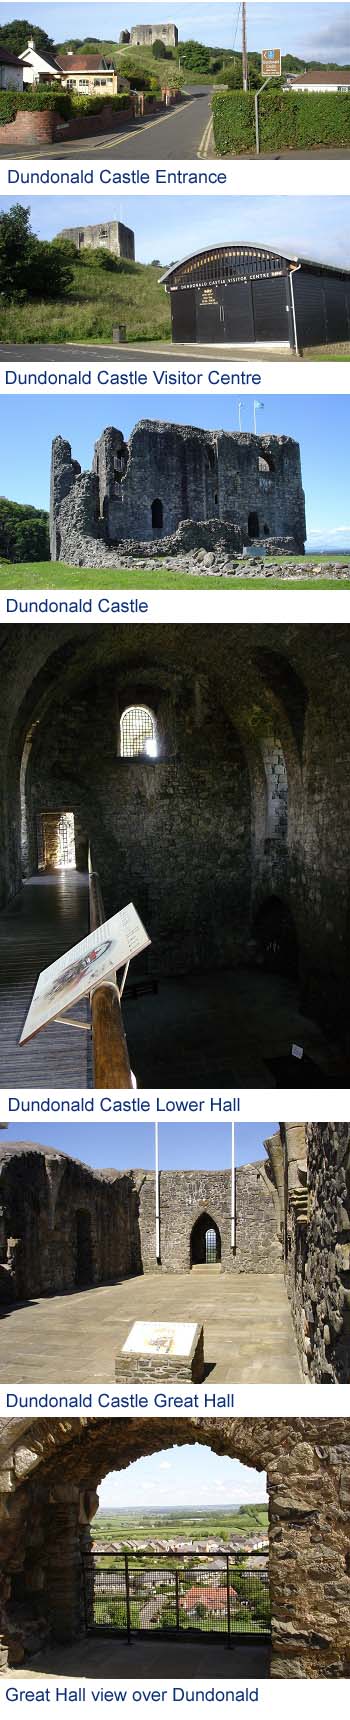 Dundonald Castle Photos